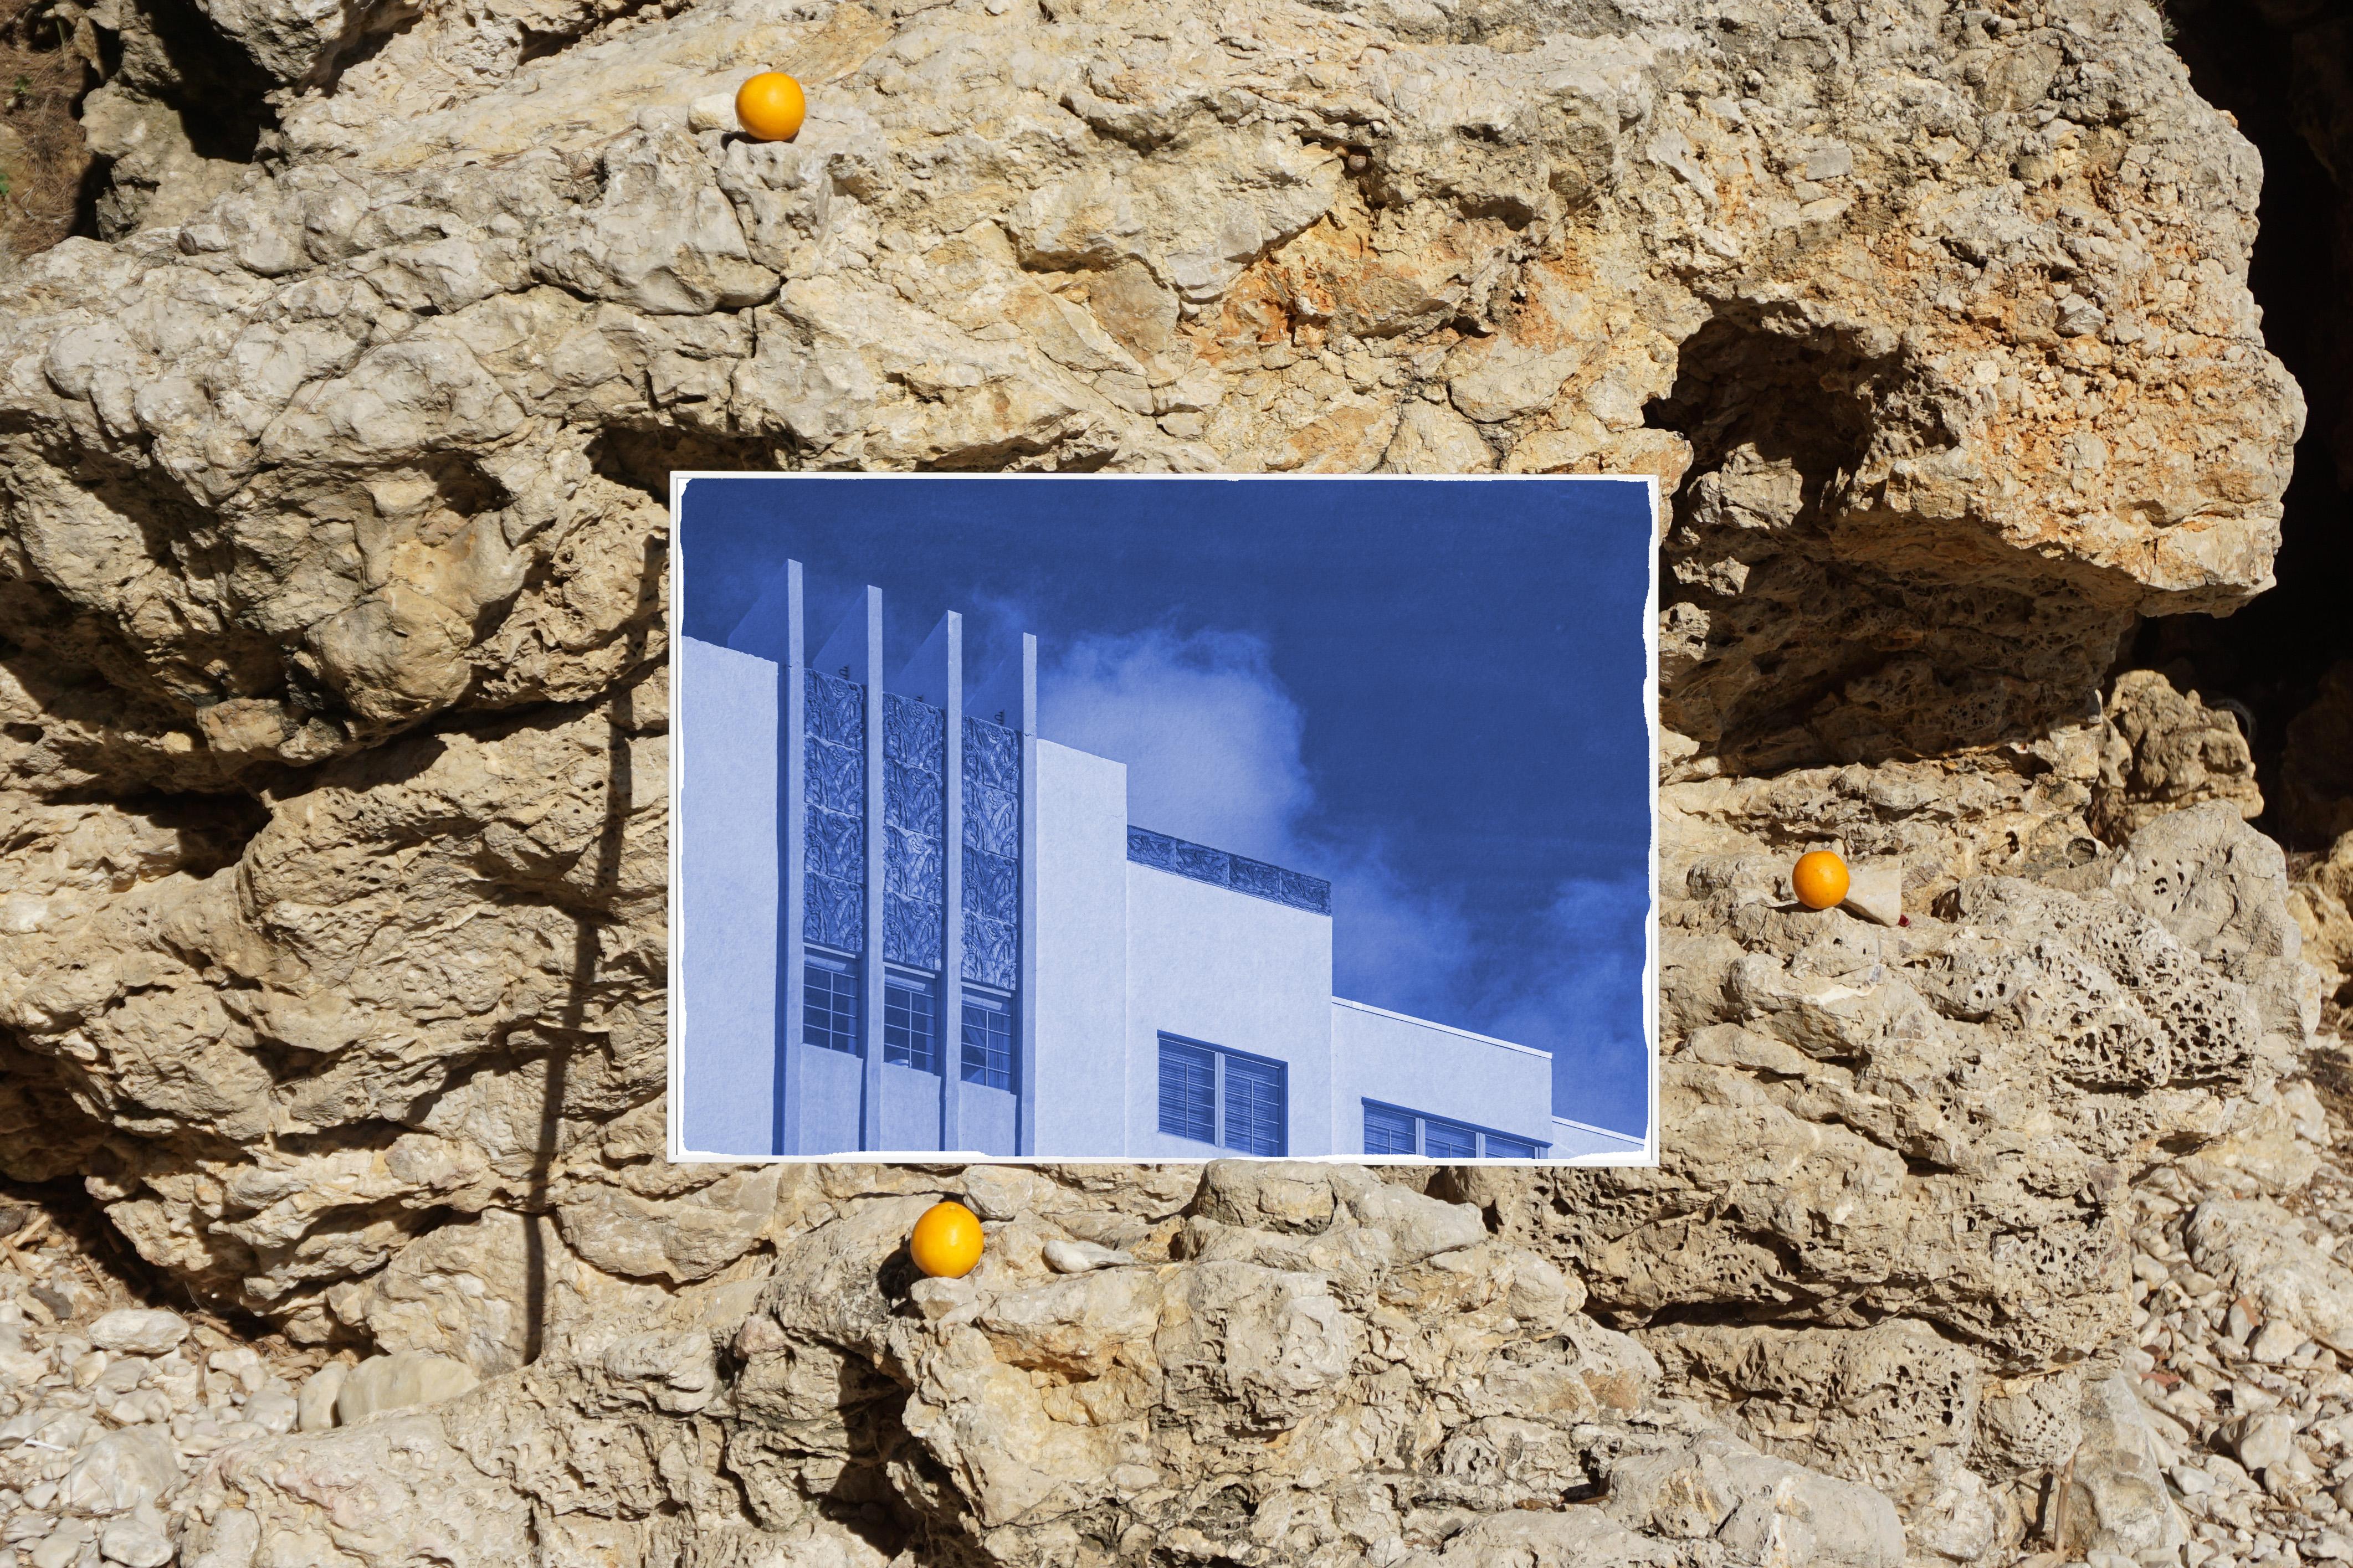 Dies ist eine exklusive handgedruckte Cyanotypie in limitierter Auflage. 
Diese schöne Cyanotypie zeigt eine ikonische Gebäudefassade aus den dreißiger Jahren. 

Einzelheiten:
+ Titel: Gebäude aus den dreißiger Jahren mit Himmel
+ Jahr: 2021
+